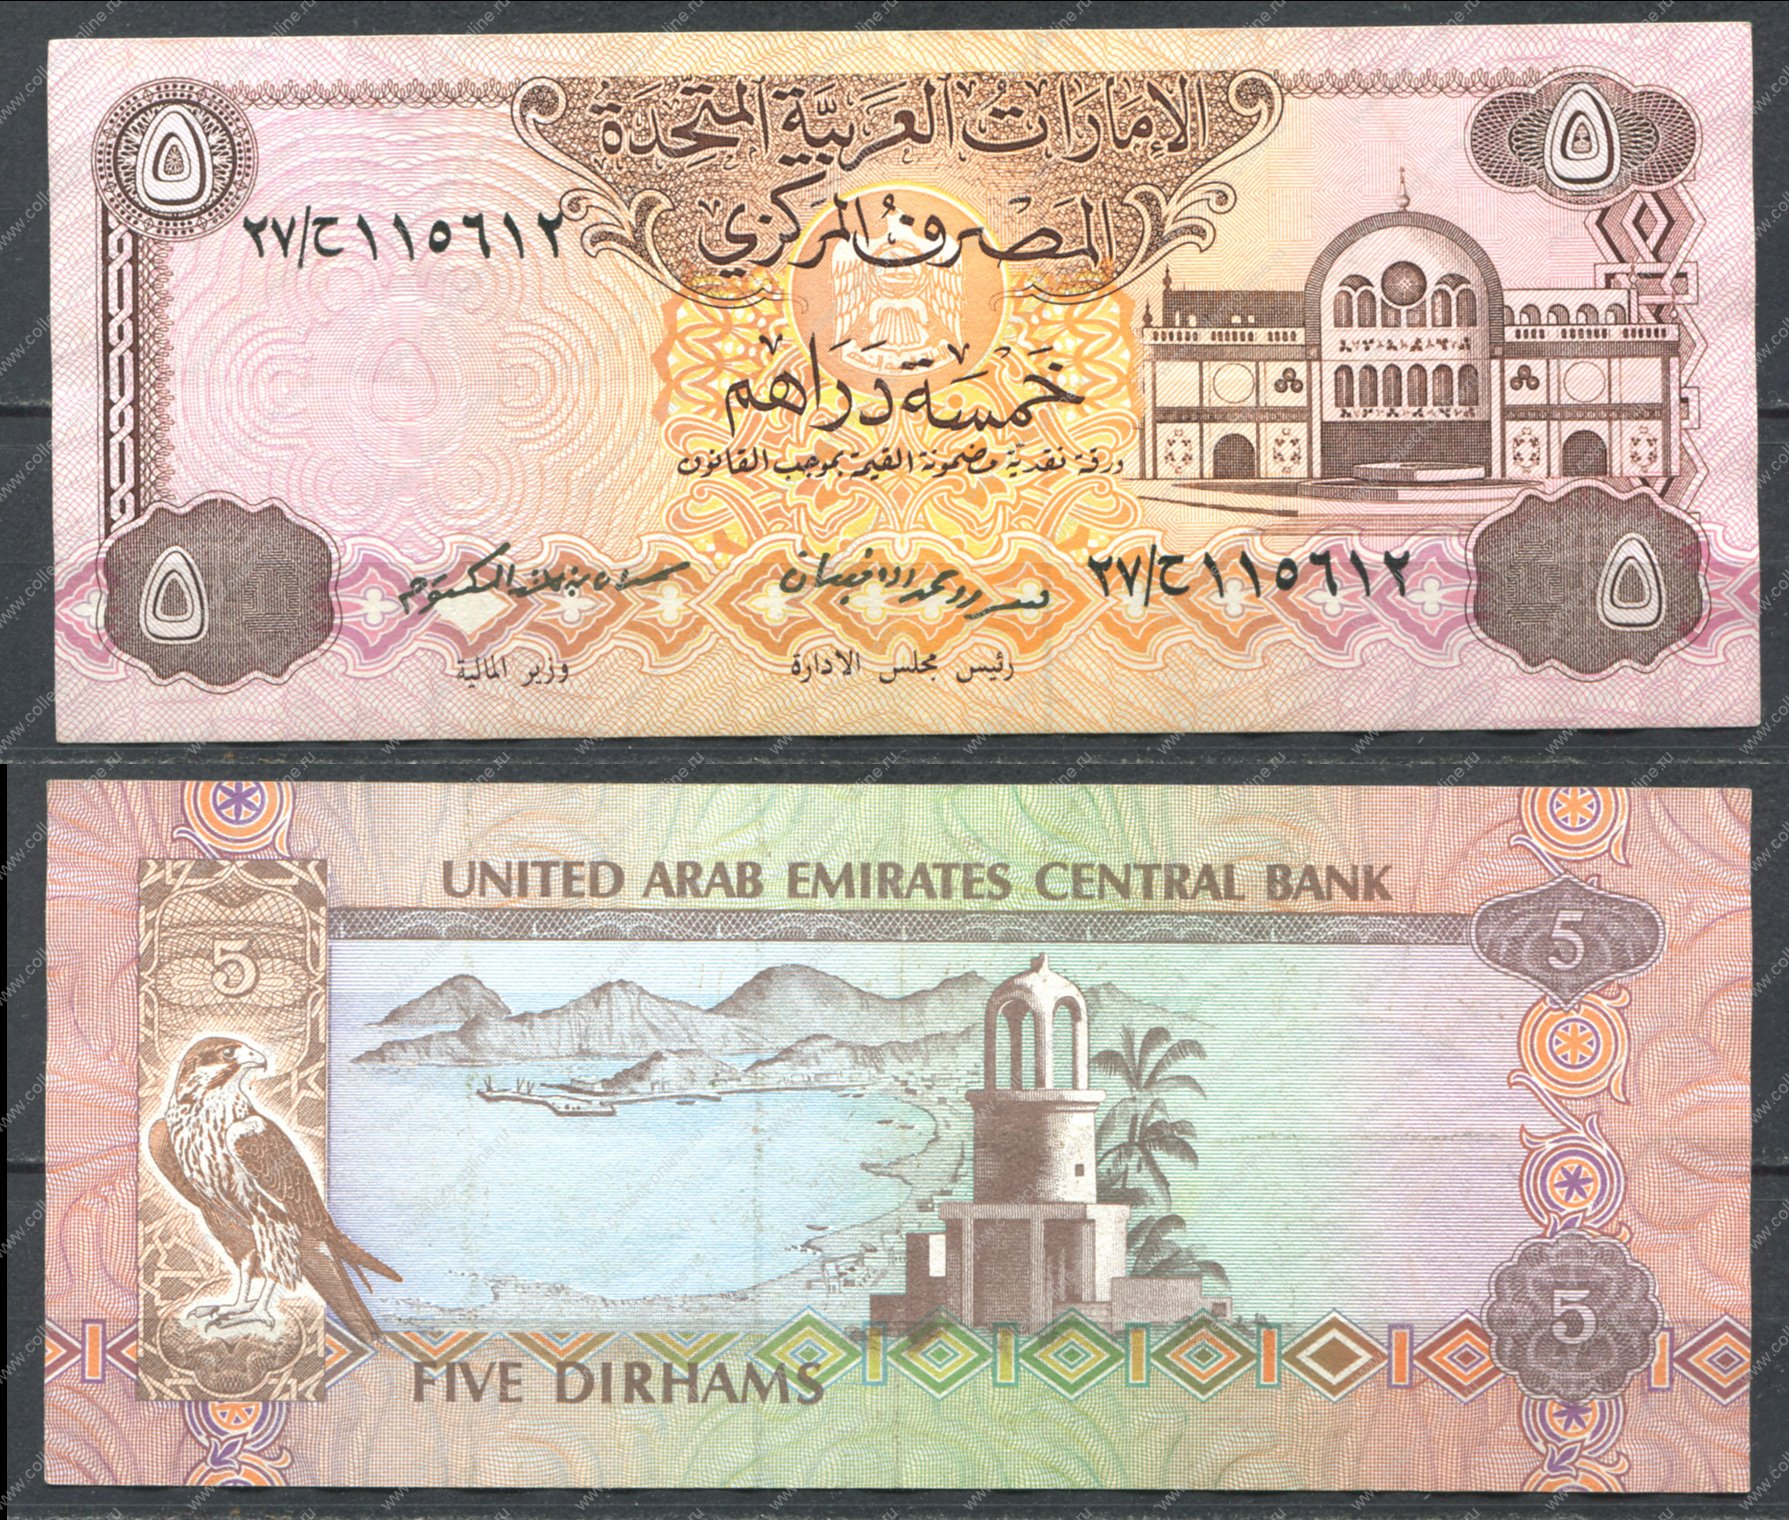 Купить дирхамы в нижнем новгороде. Дирхамы ОАЭ. Банкноты арабских стран. Дирхам ОАЭ банкноты. Арабская купюра 1.